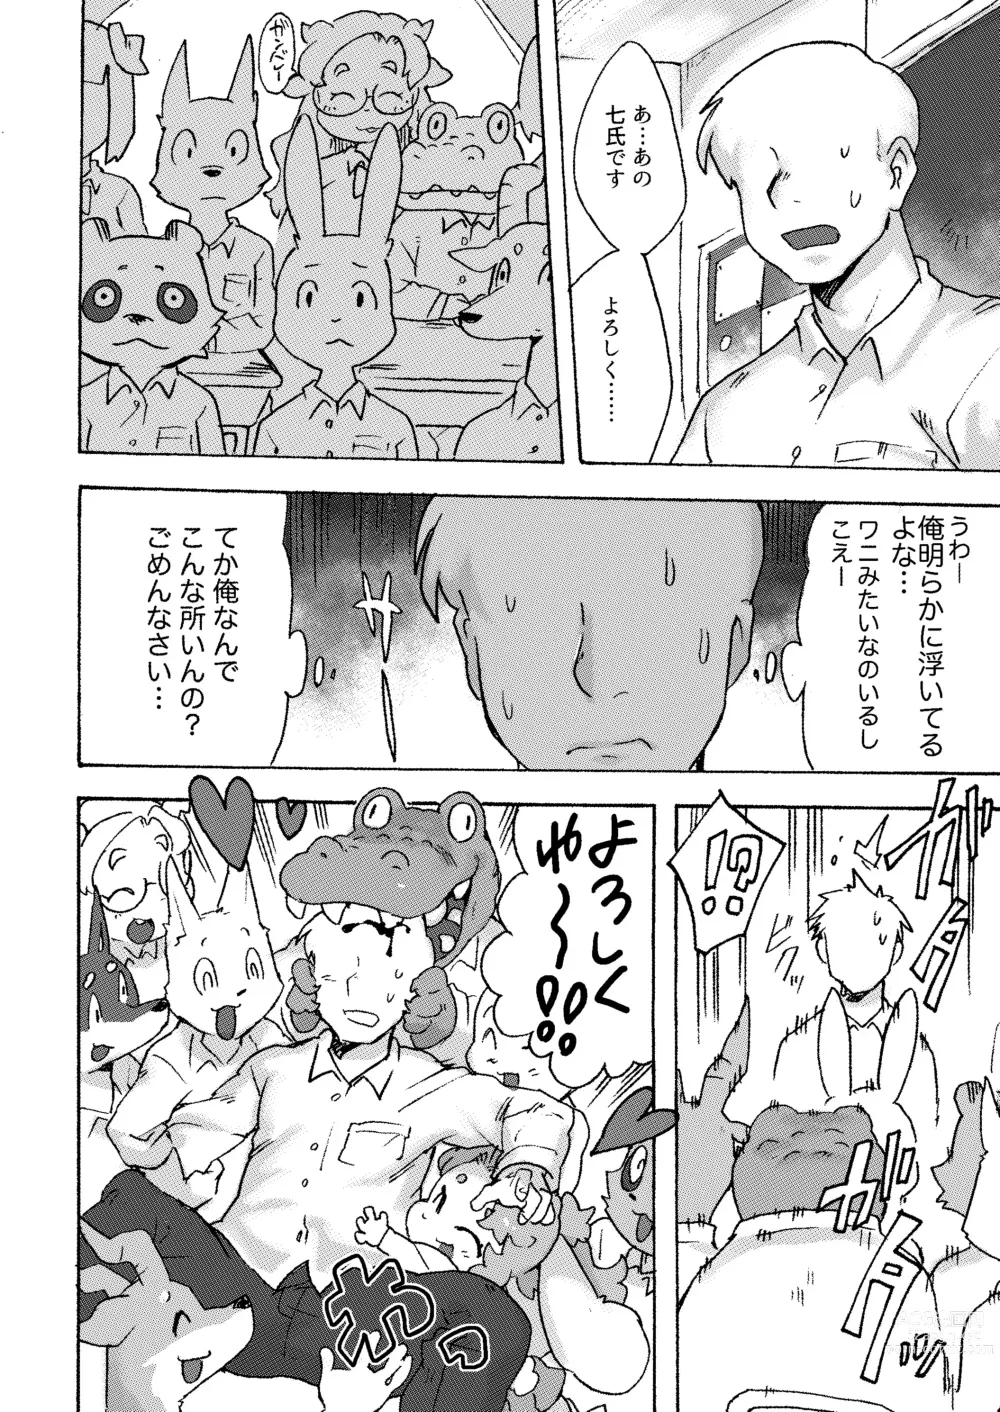 Page 7 of doujinshi Kemo Gal ni Aisarete Moto no Sekai ni Kaerenai (decensored)